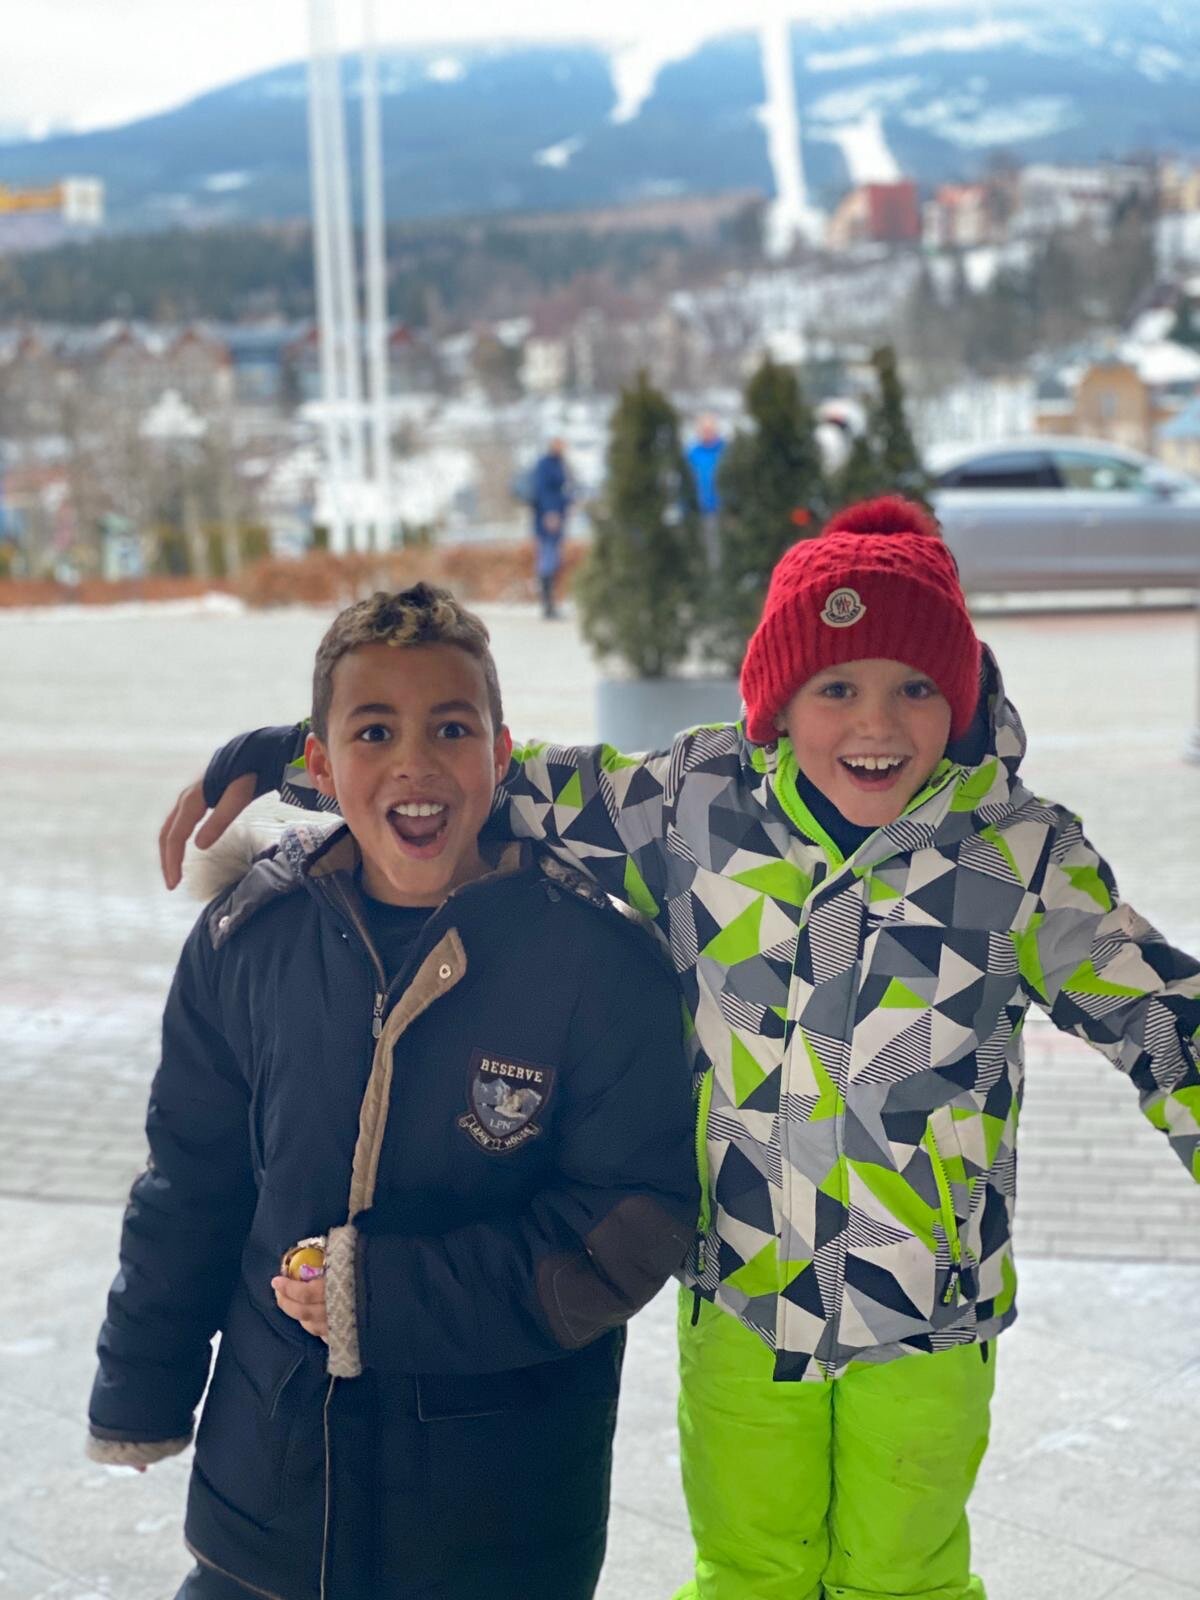 Kids Apres Ski Style — monika dixon